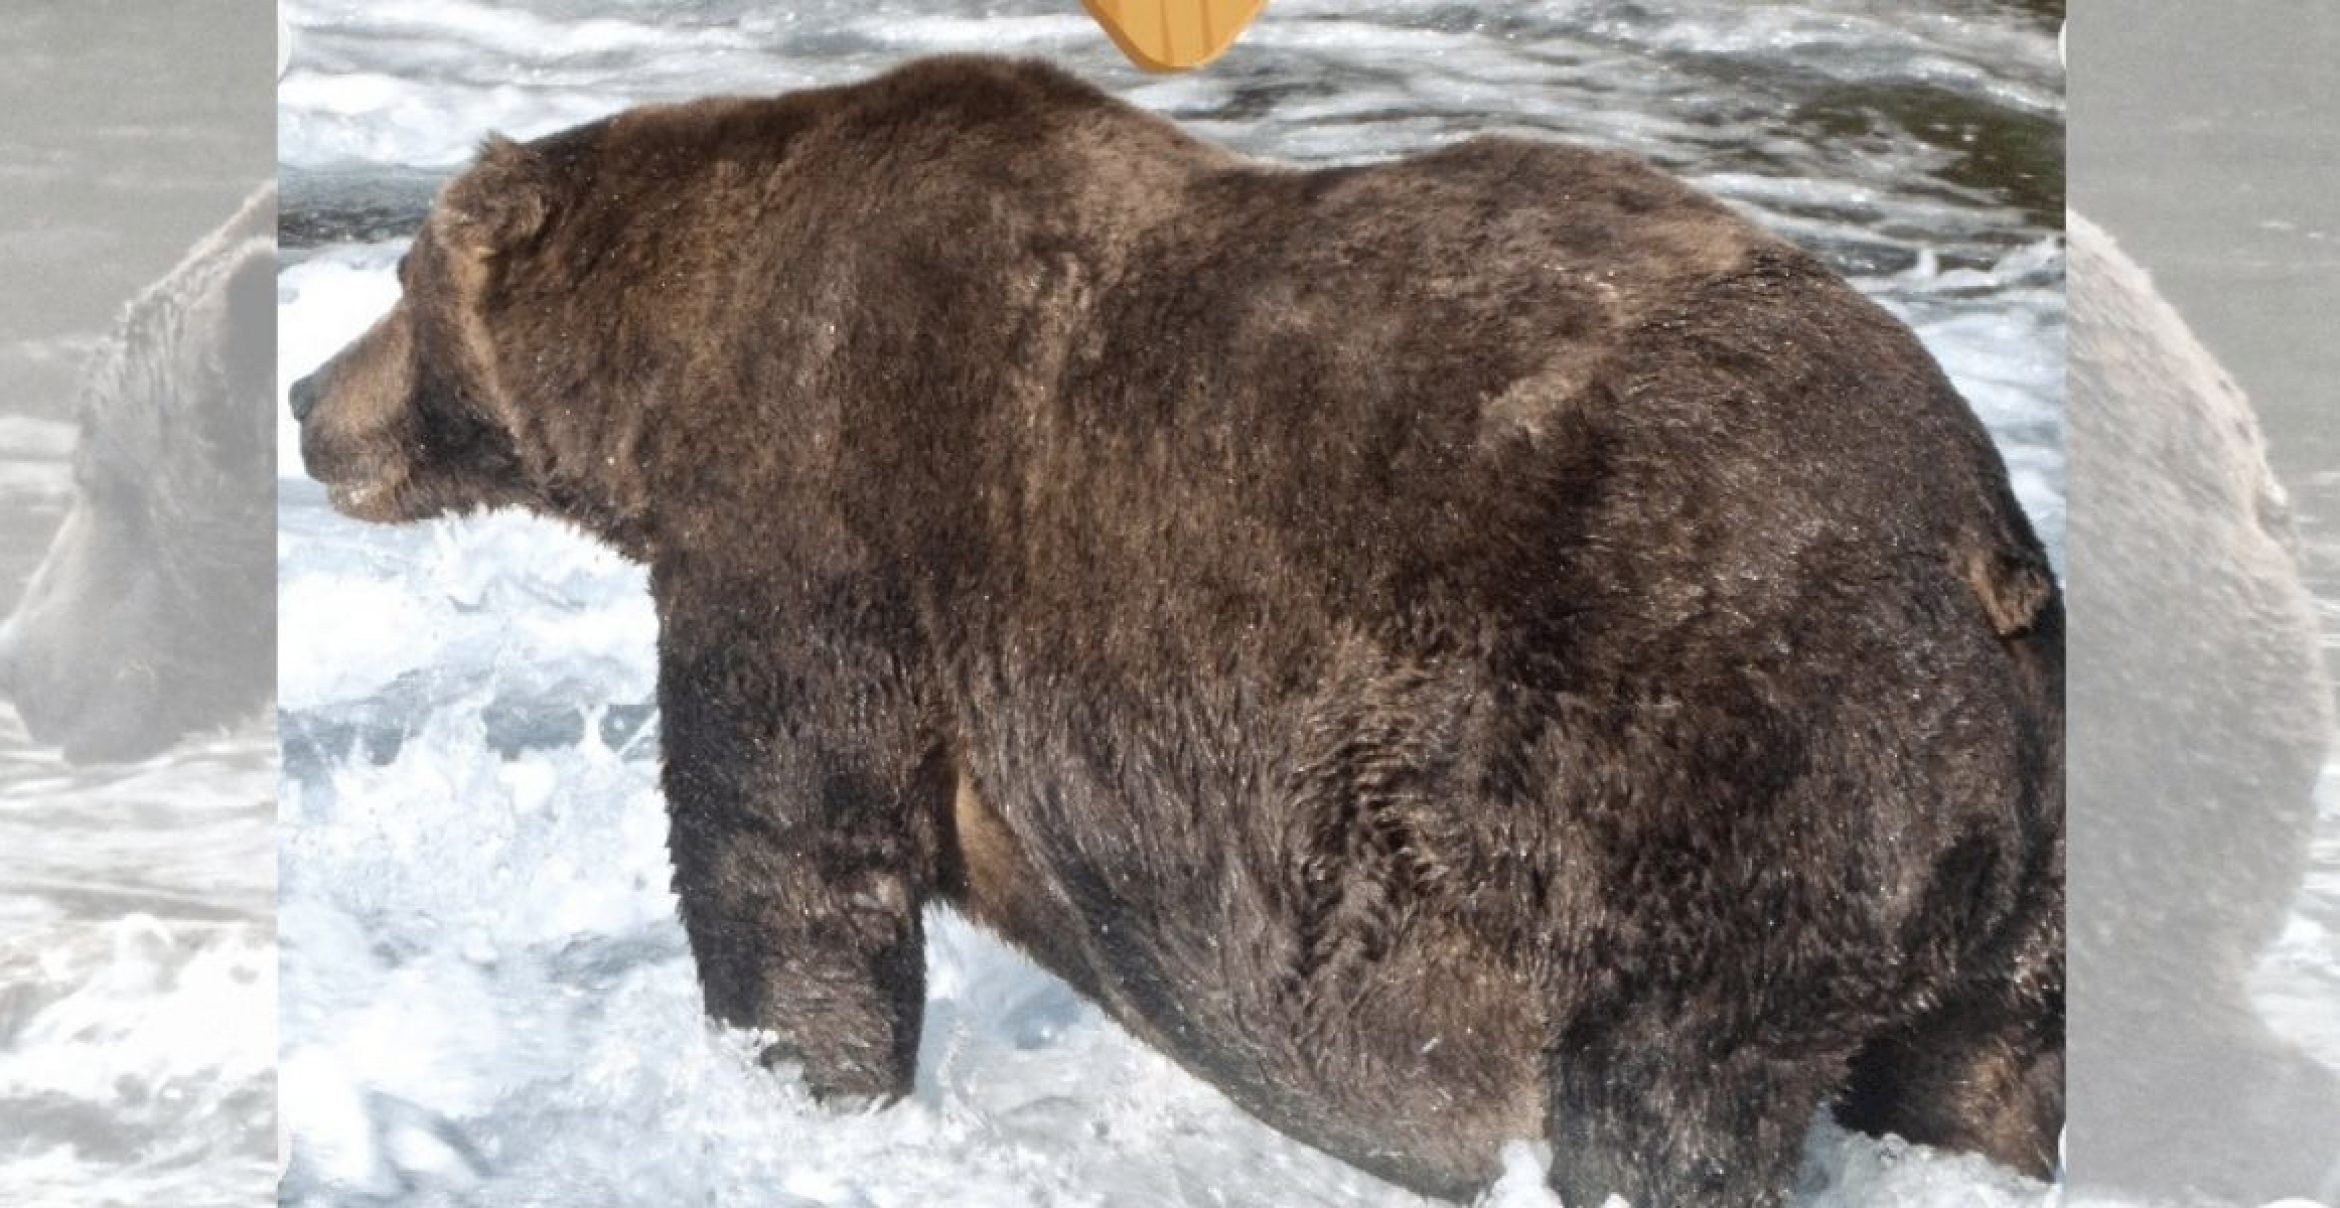 Wer ist der fetteste Braunbär? Ein Nationalpark in Alaska hat es in einem Wettstreit herausgefunden